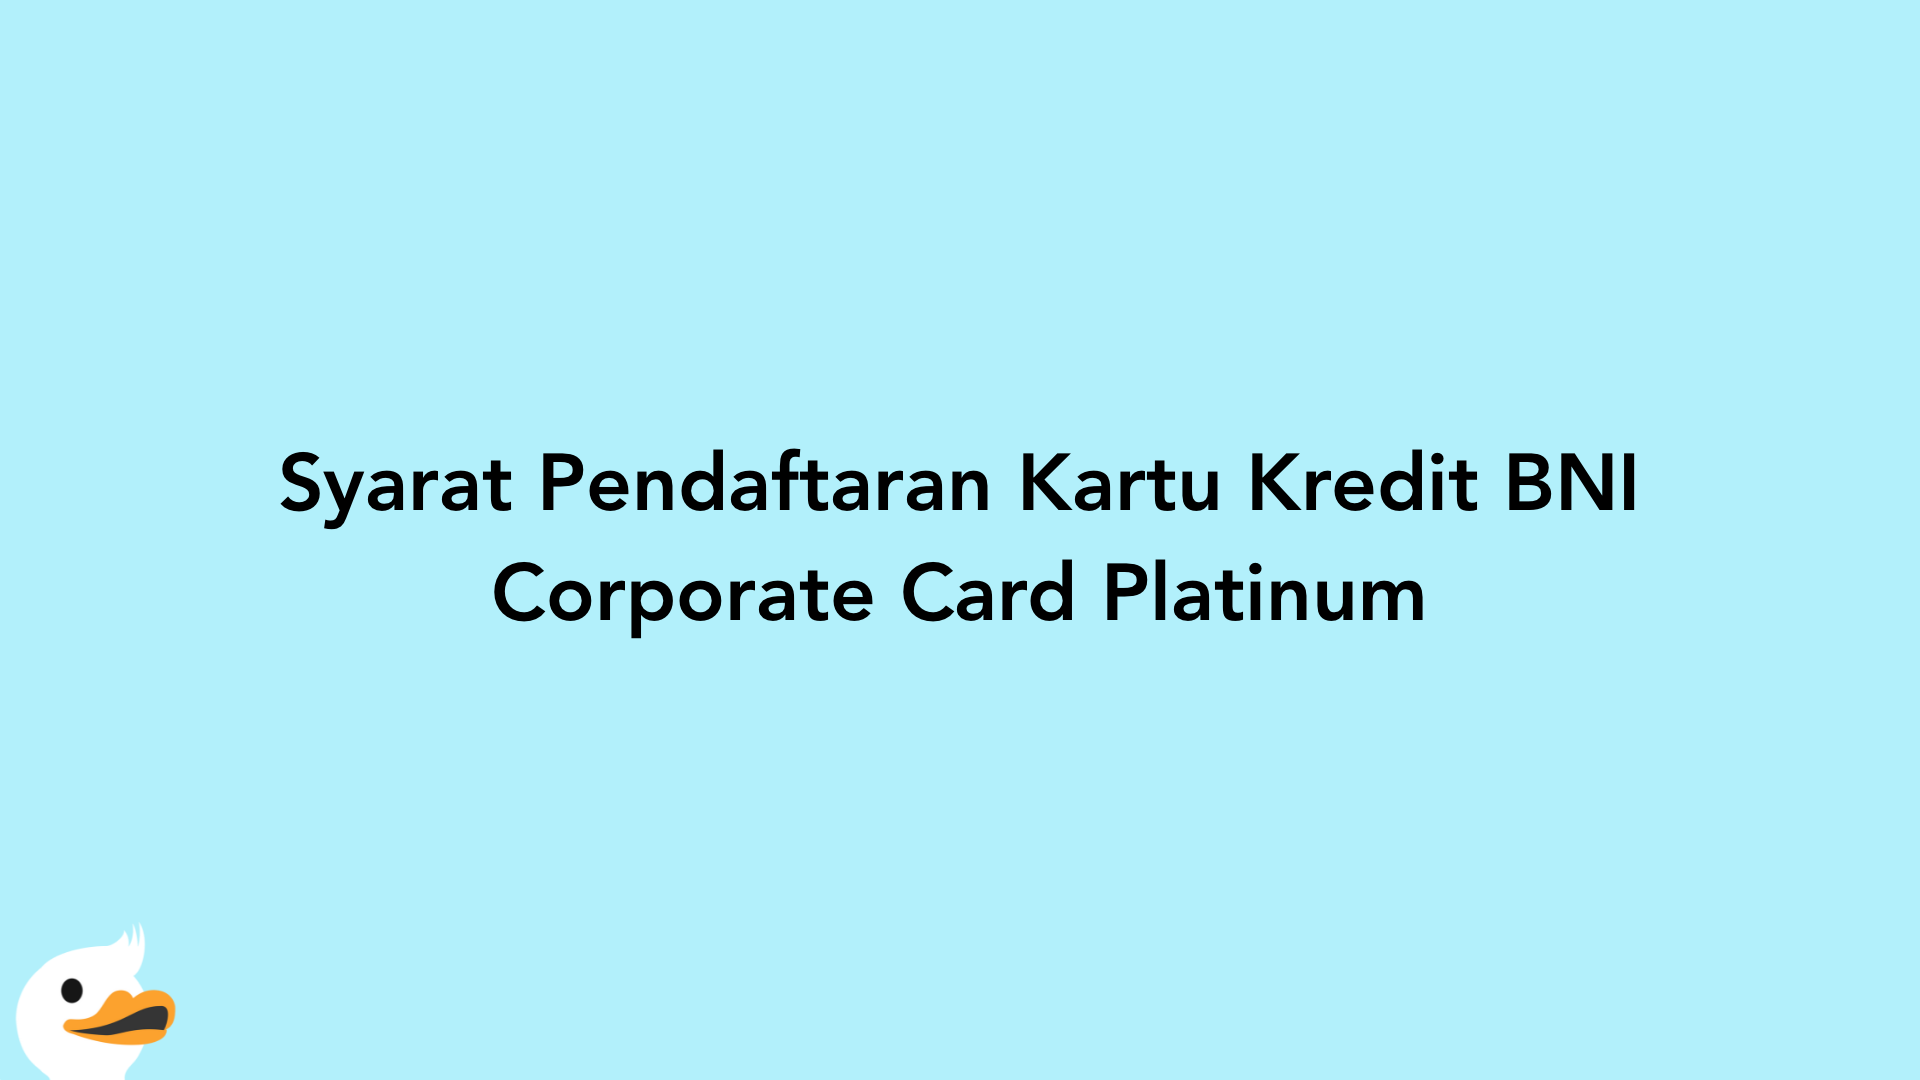 Syarat Pendaftaran Kartu Kredit BNI Corporate Card Platinum